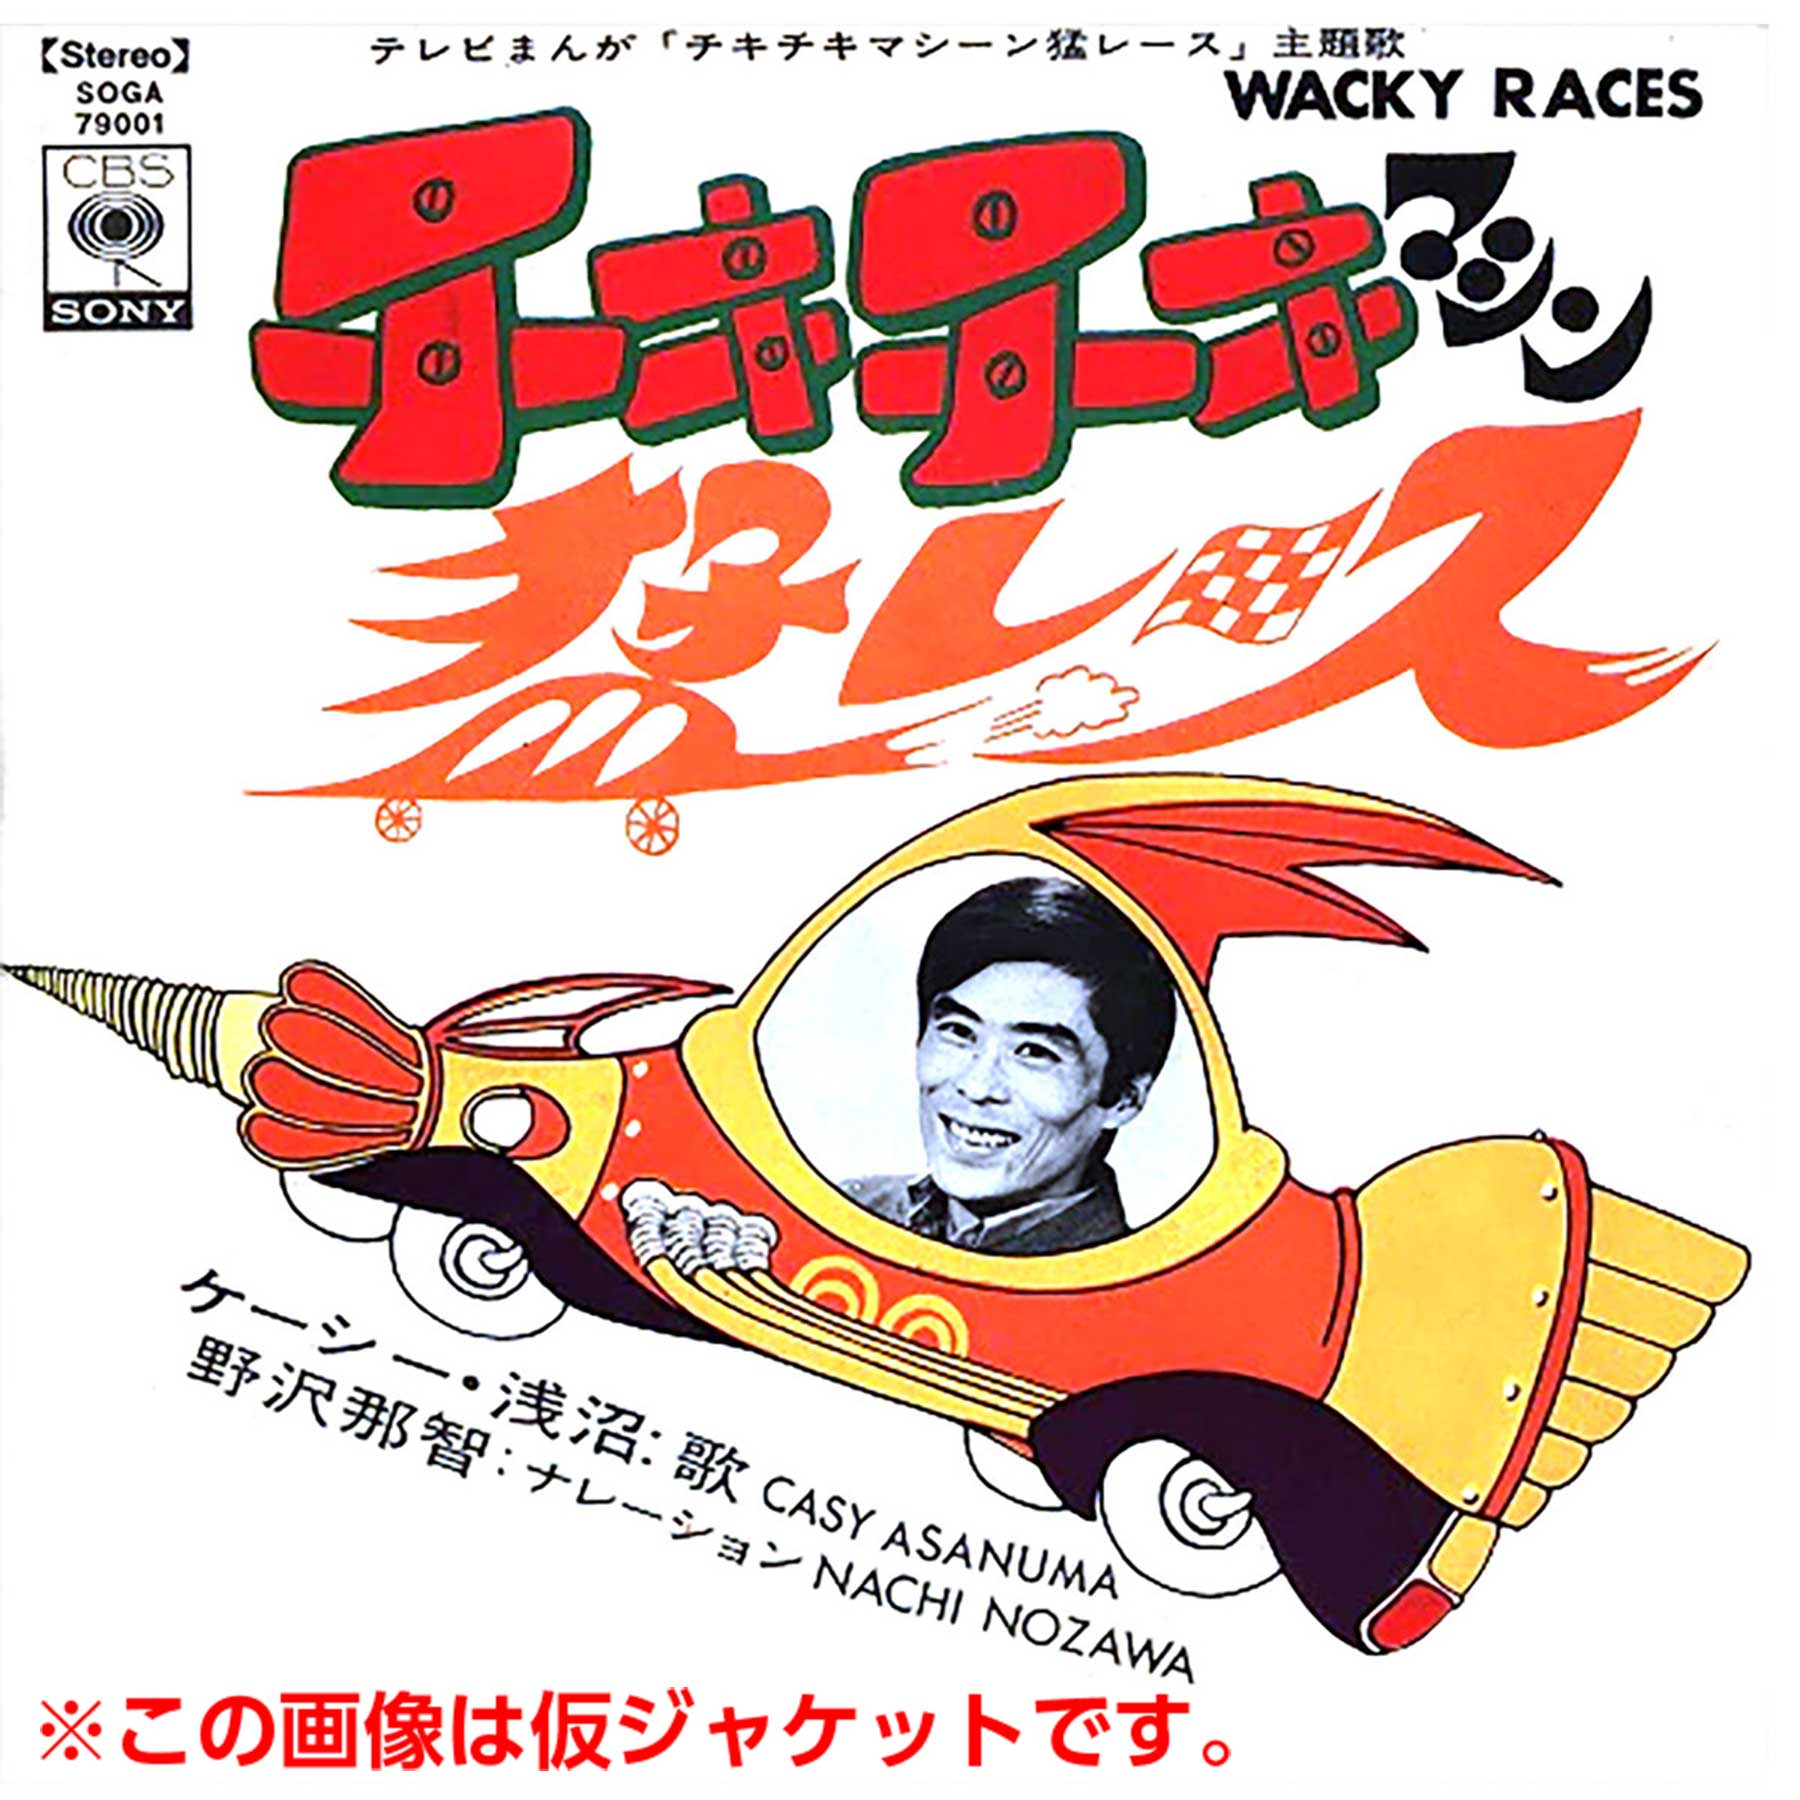 1970年リリース「チキチキマシーン猛レース」日本版主題歌が「オーダー